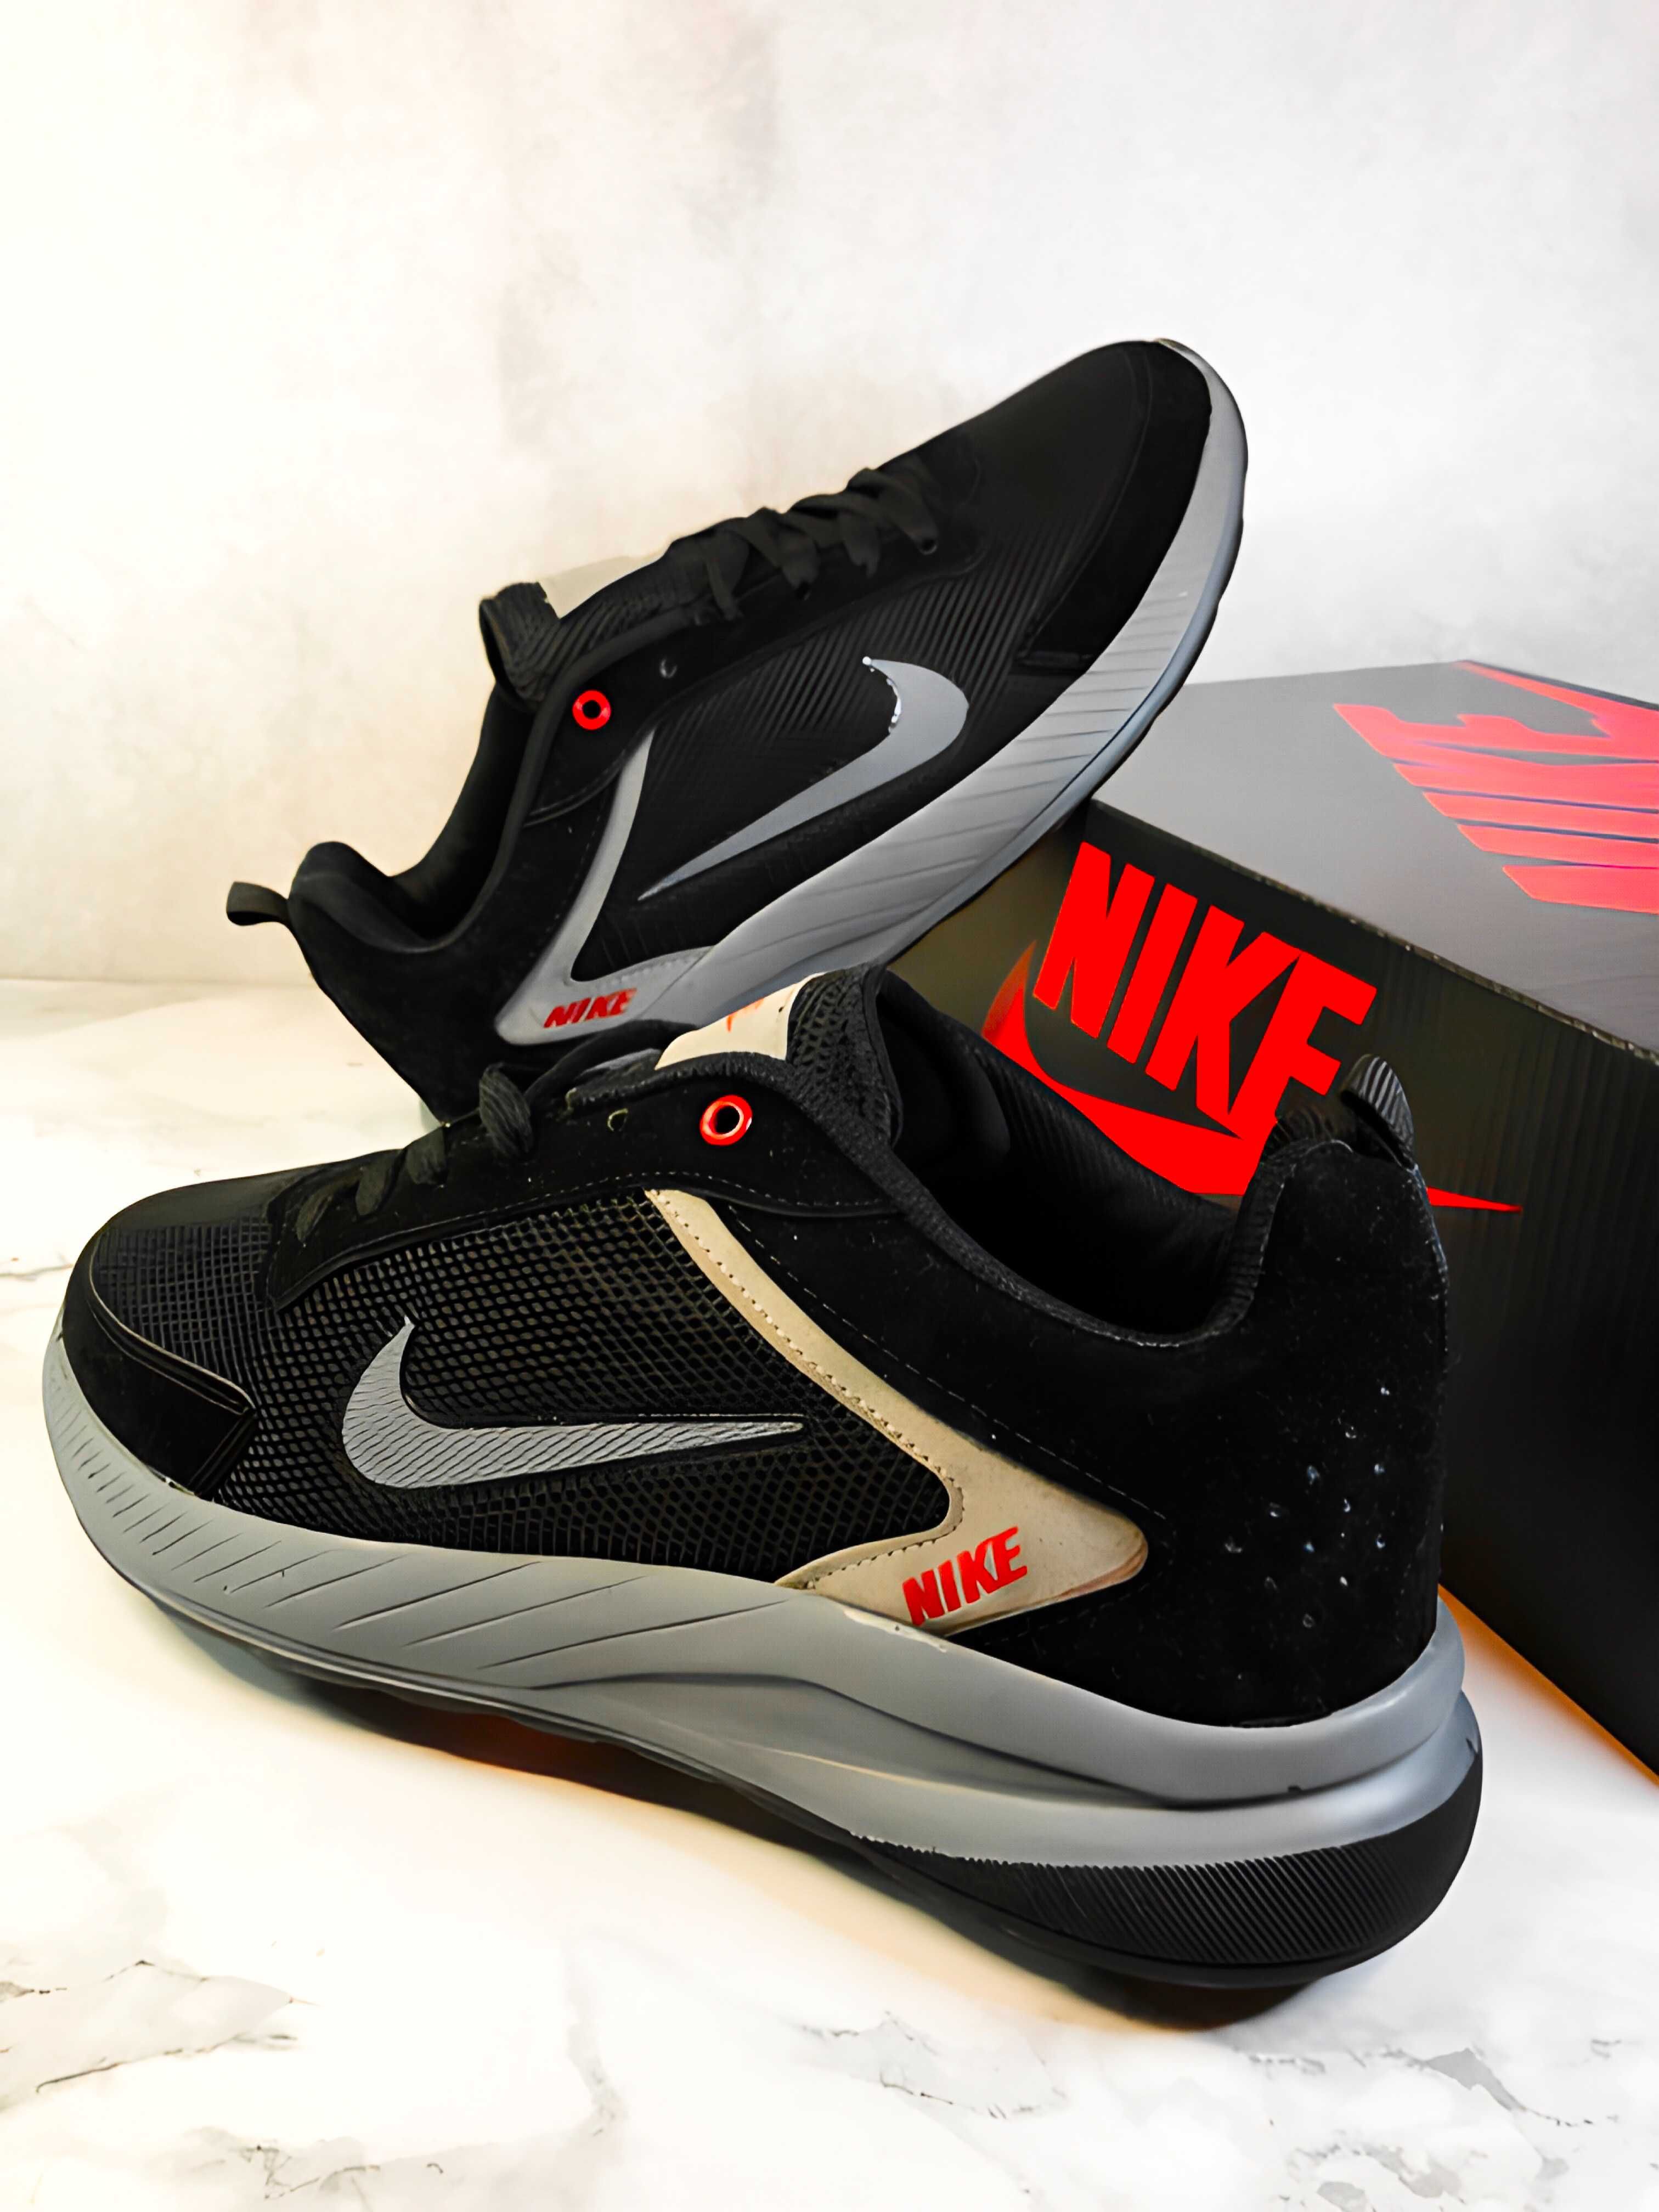 Без предоплат! Летние Мужские кроссовки Nike 40.41.42. размер